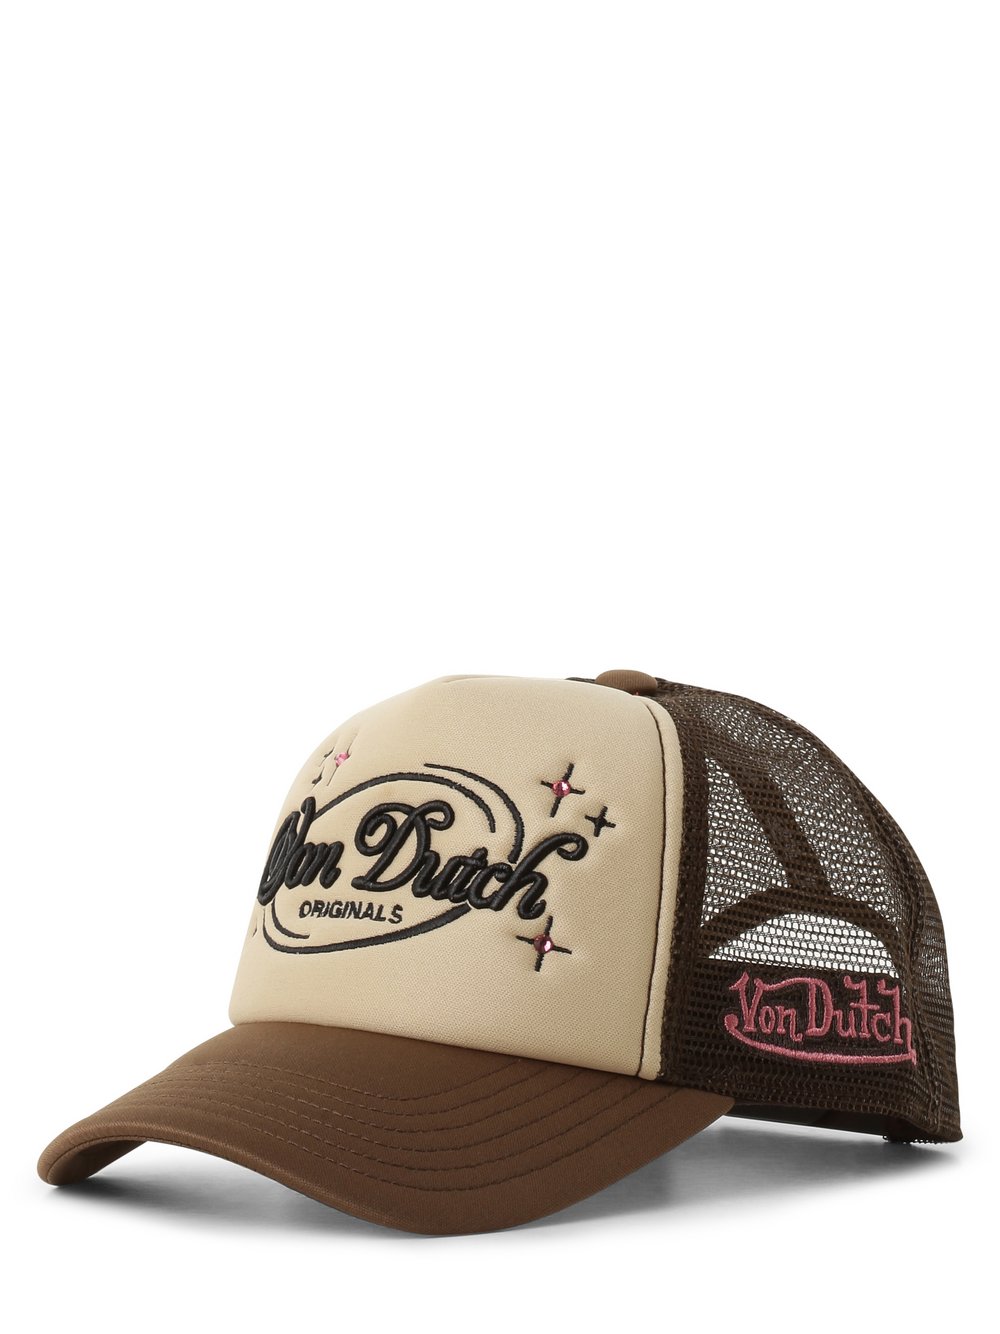 Von Dutch - Damska czapka z daszkiem  Trucker Lund, beżowy|brązowy